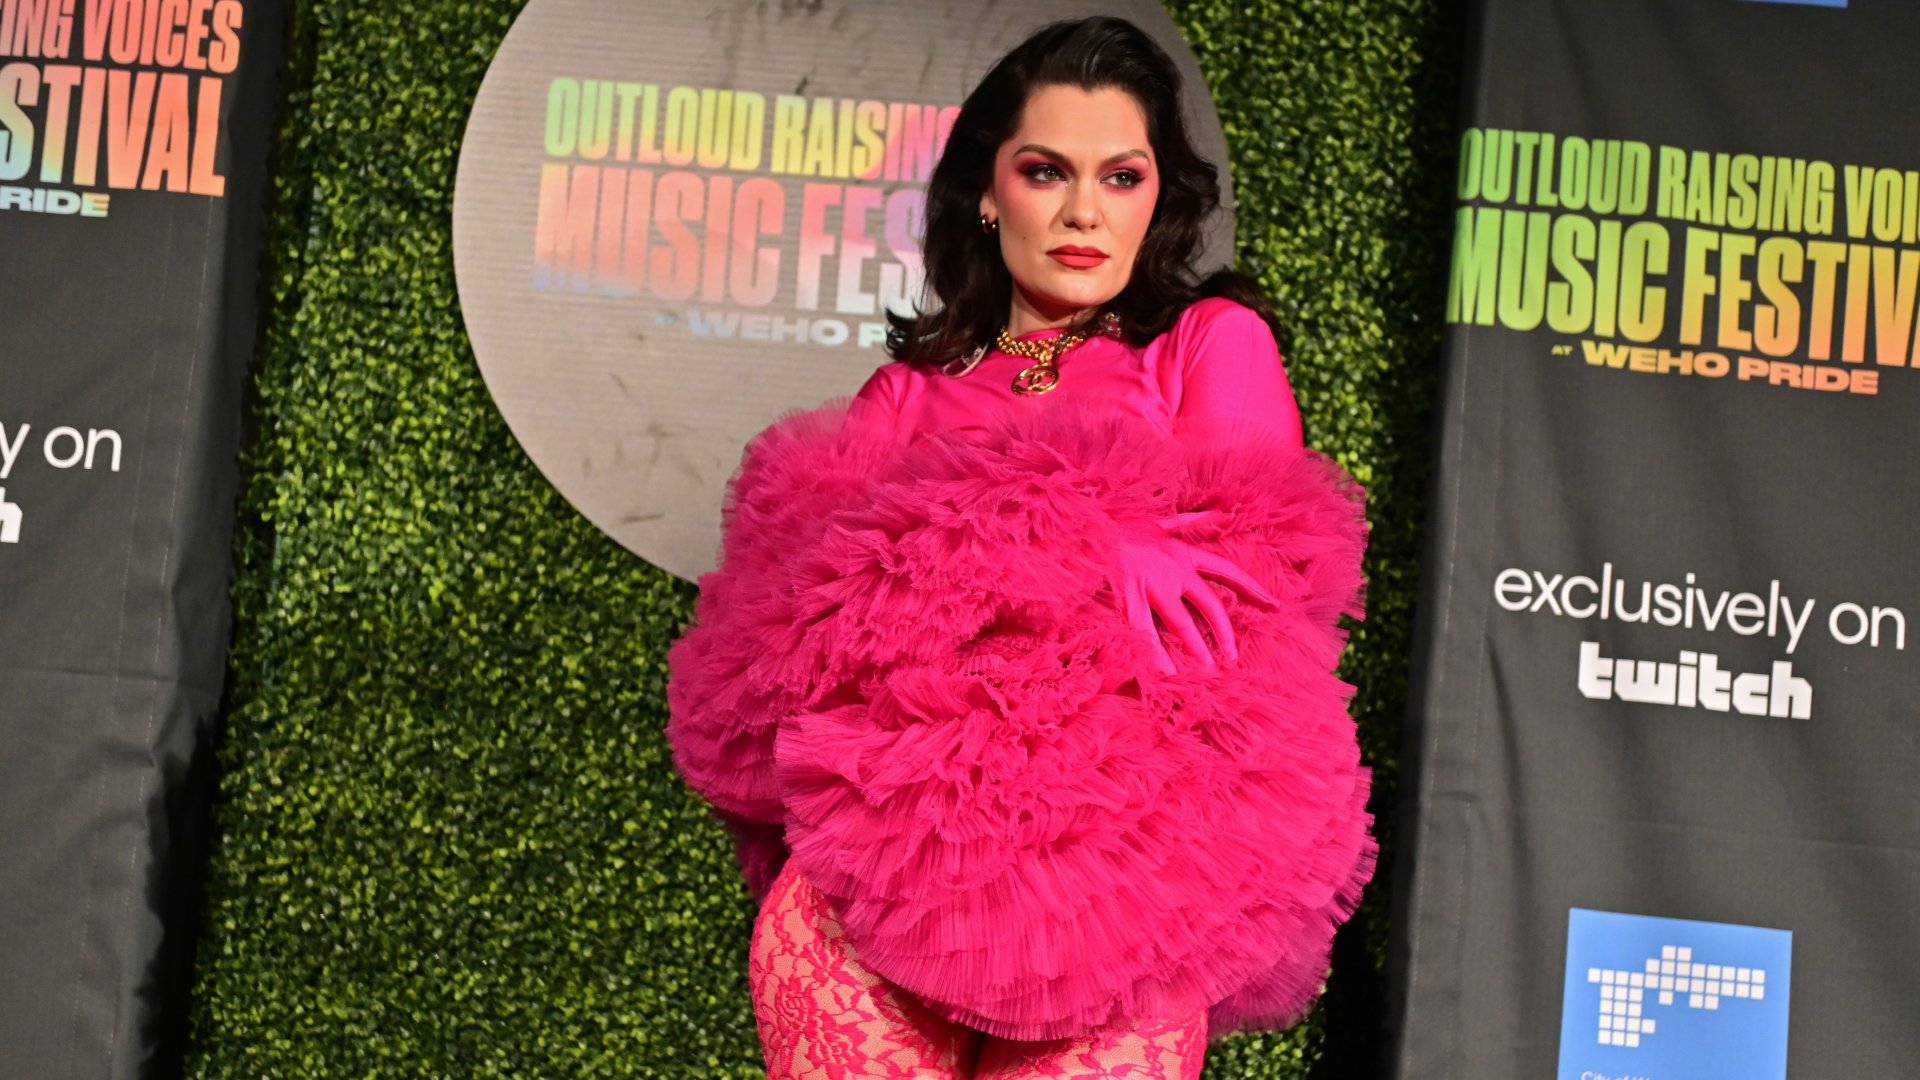 Jessie J az Outloud Raising Voices zenei fesztiválon a WeHo Pride-on 2022. június 04-én a kaliforniai West Hollywoodban